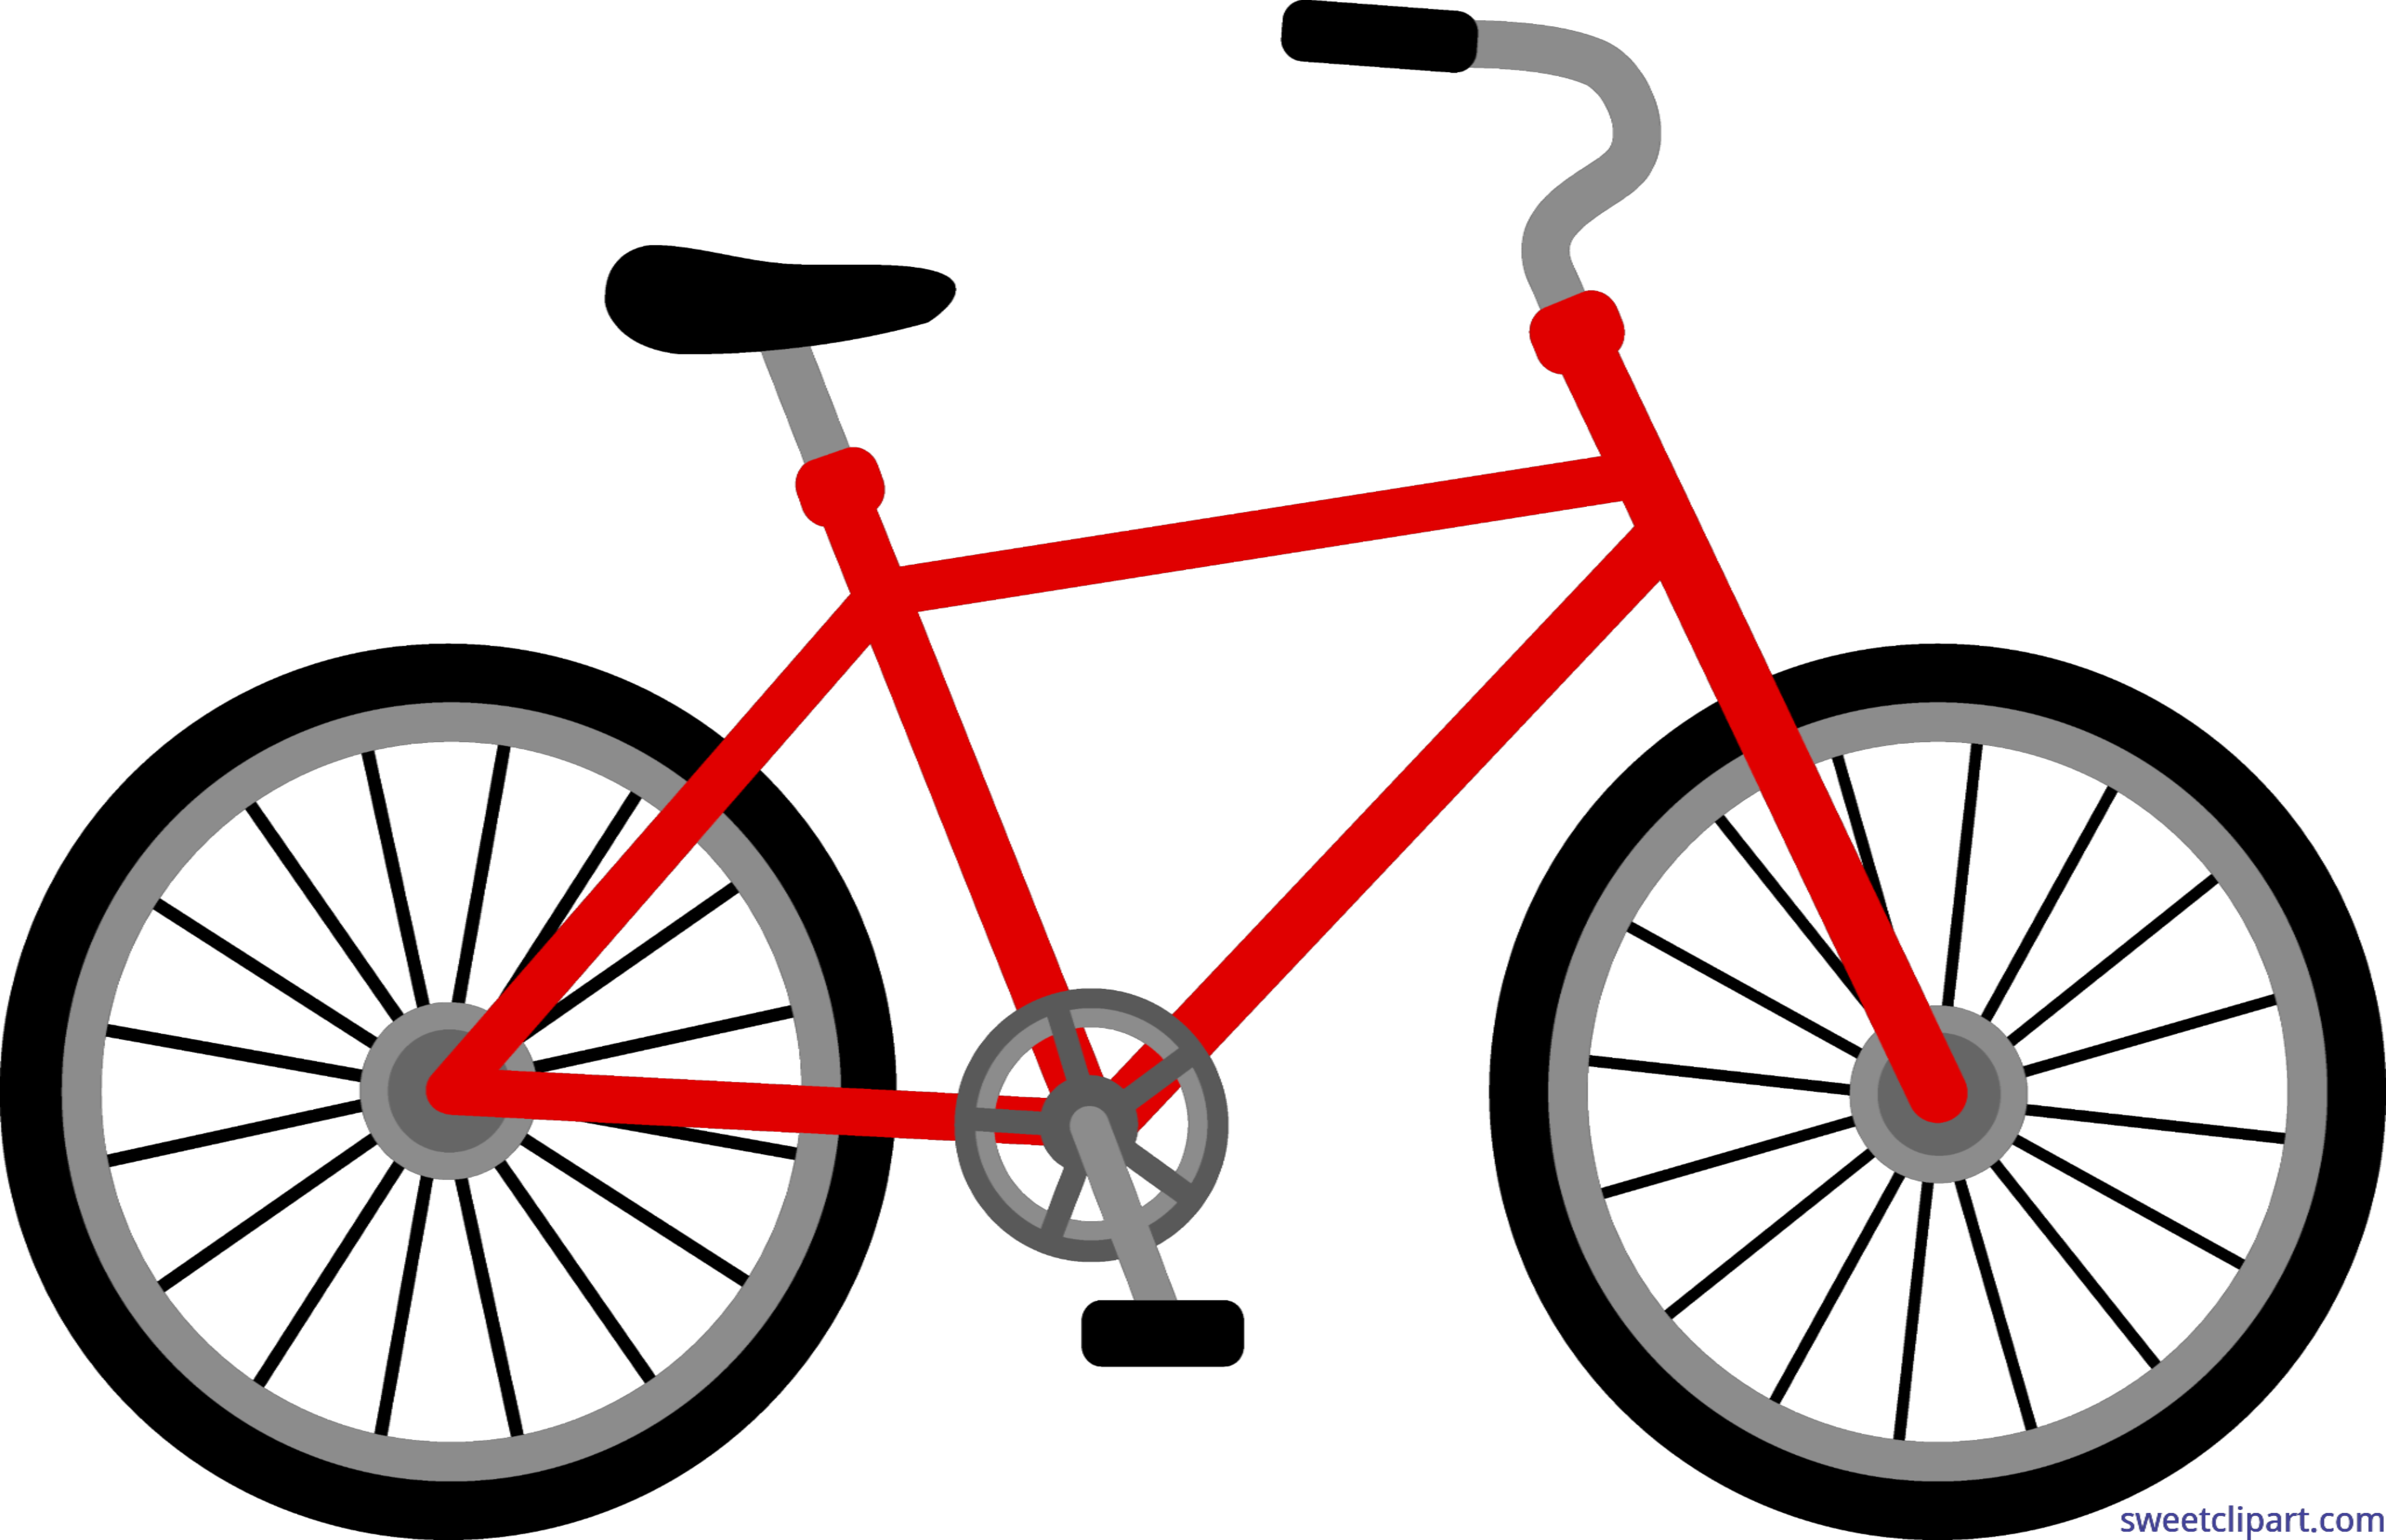 Bike object